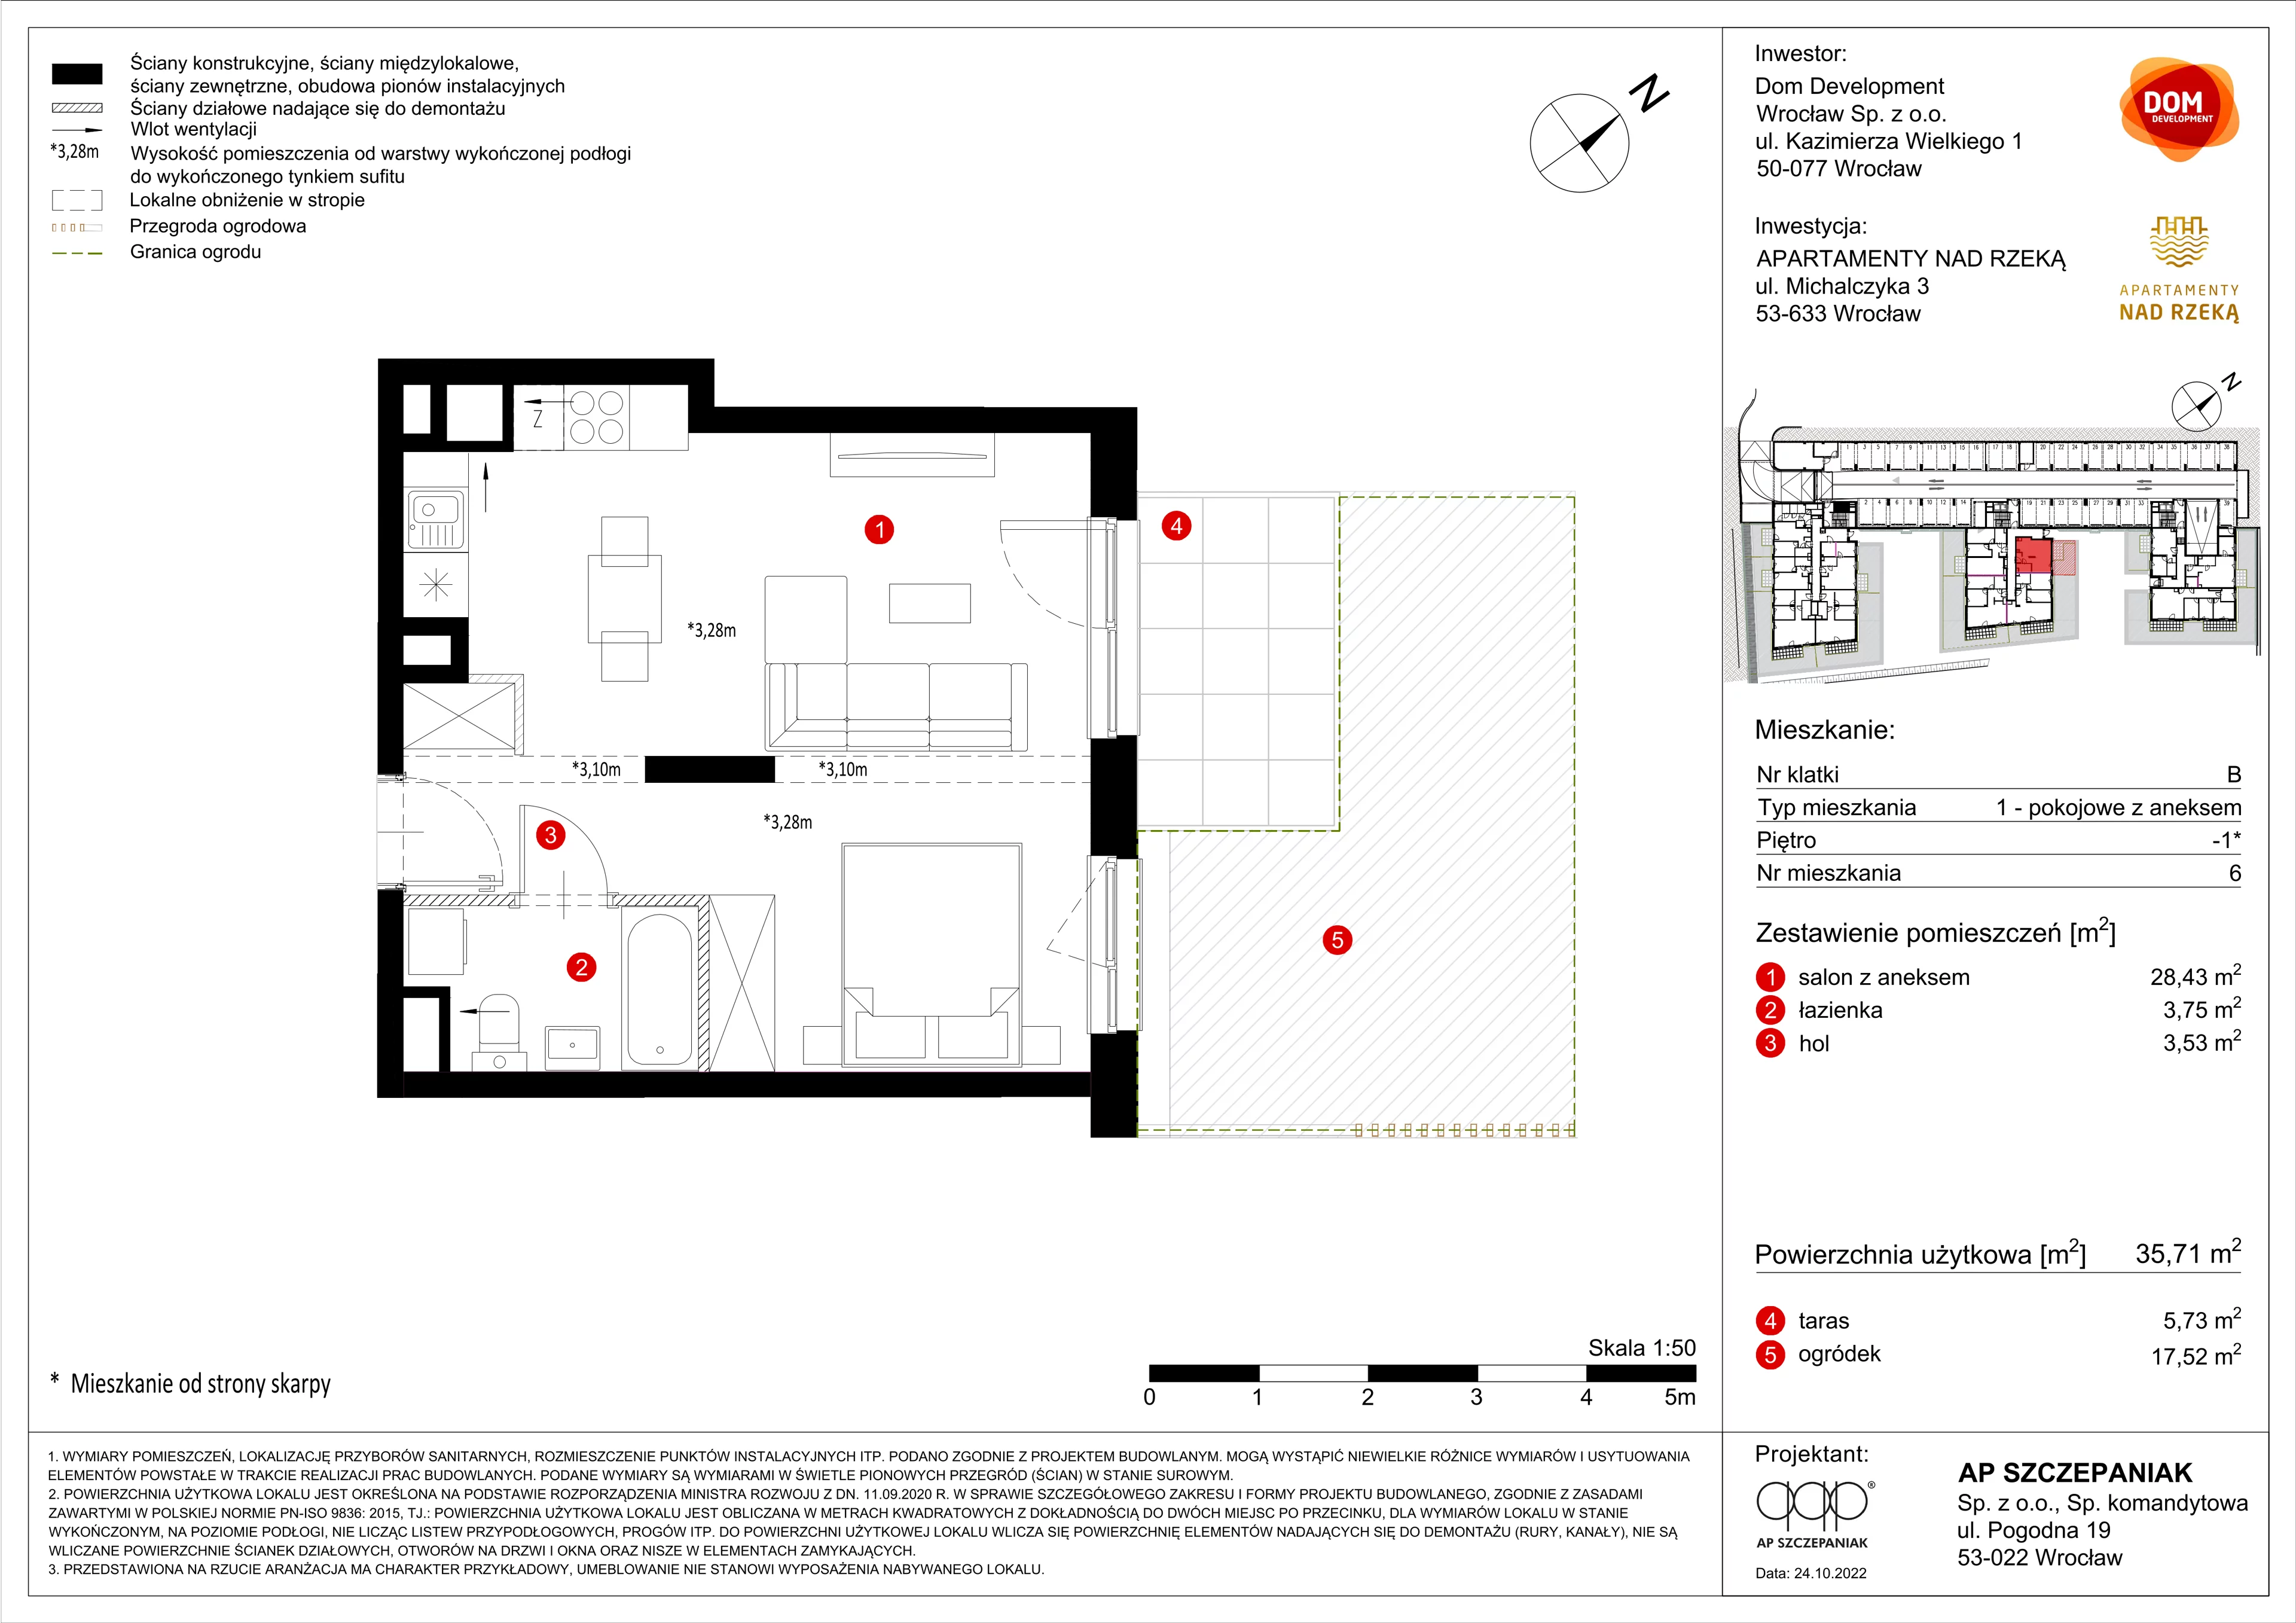 Apartament 35,71 m², poziom -1, oferta nr A/6, Apartamenty Nad Rzeką, Wrocław, Stare Miasto, ul. Michalczyka 3